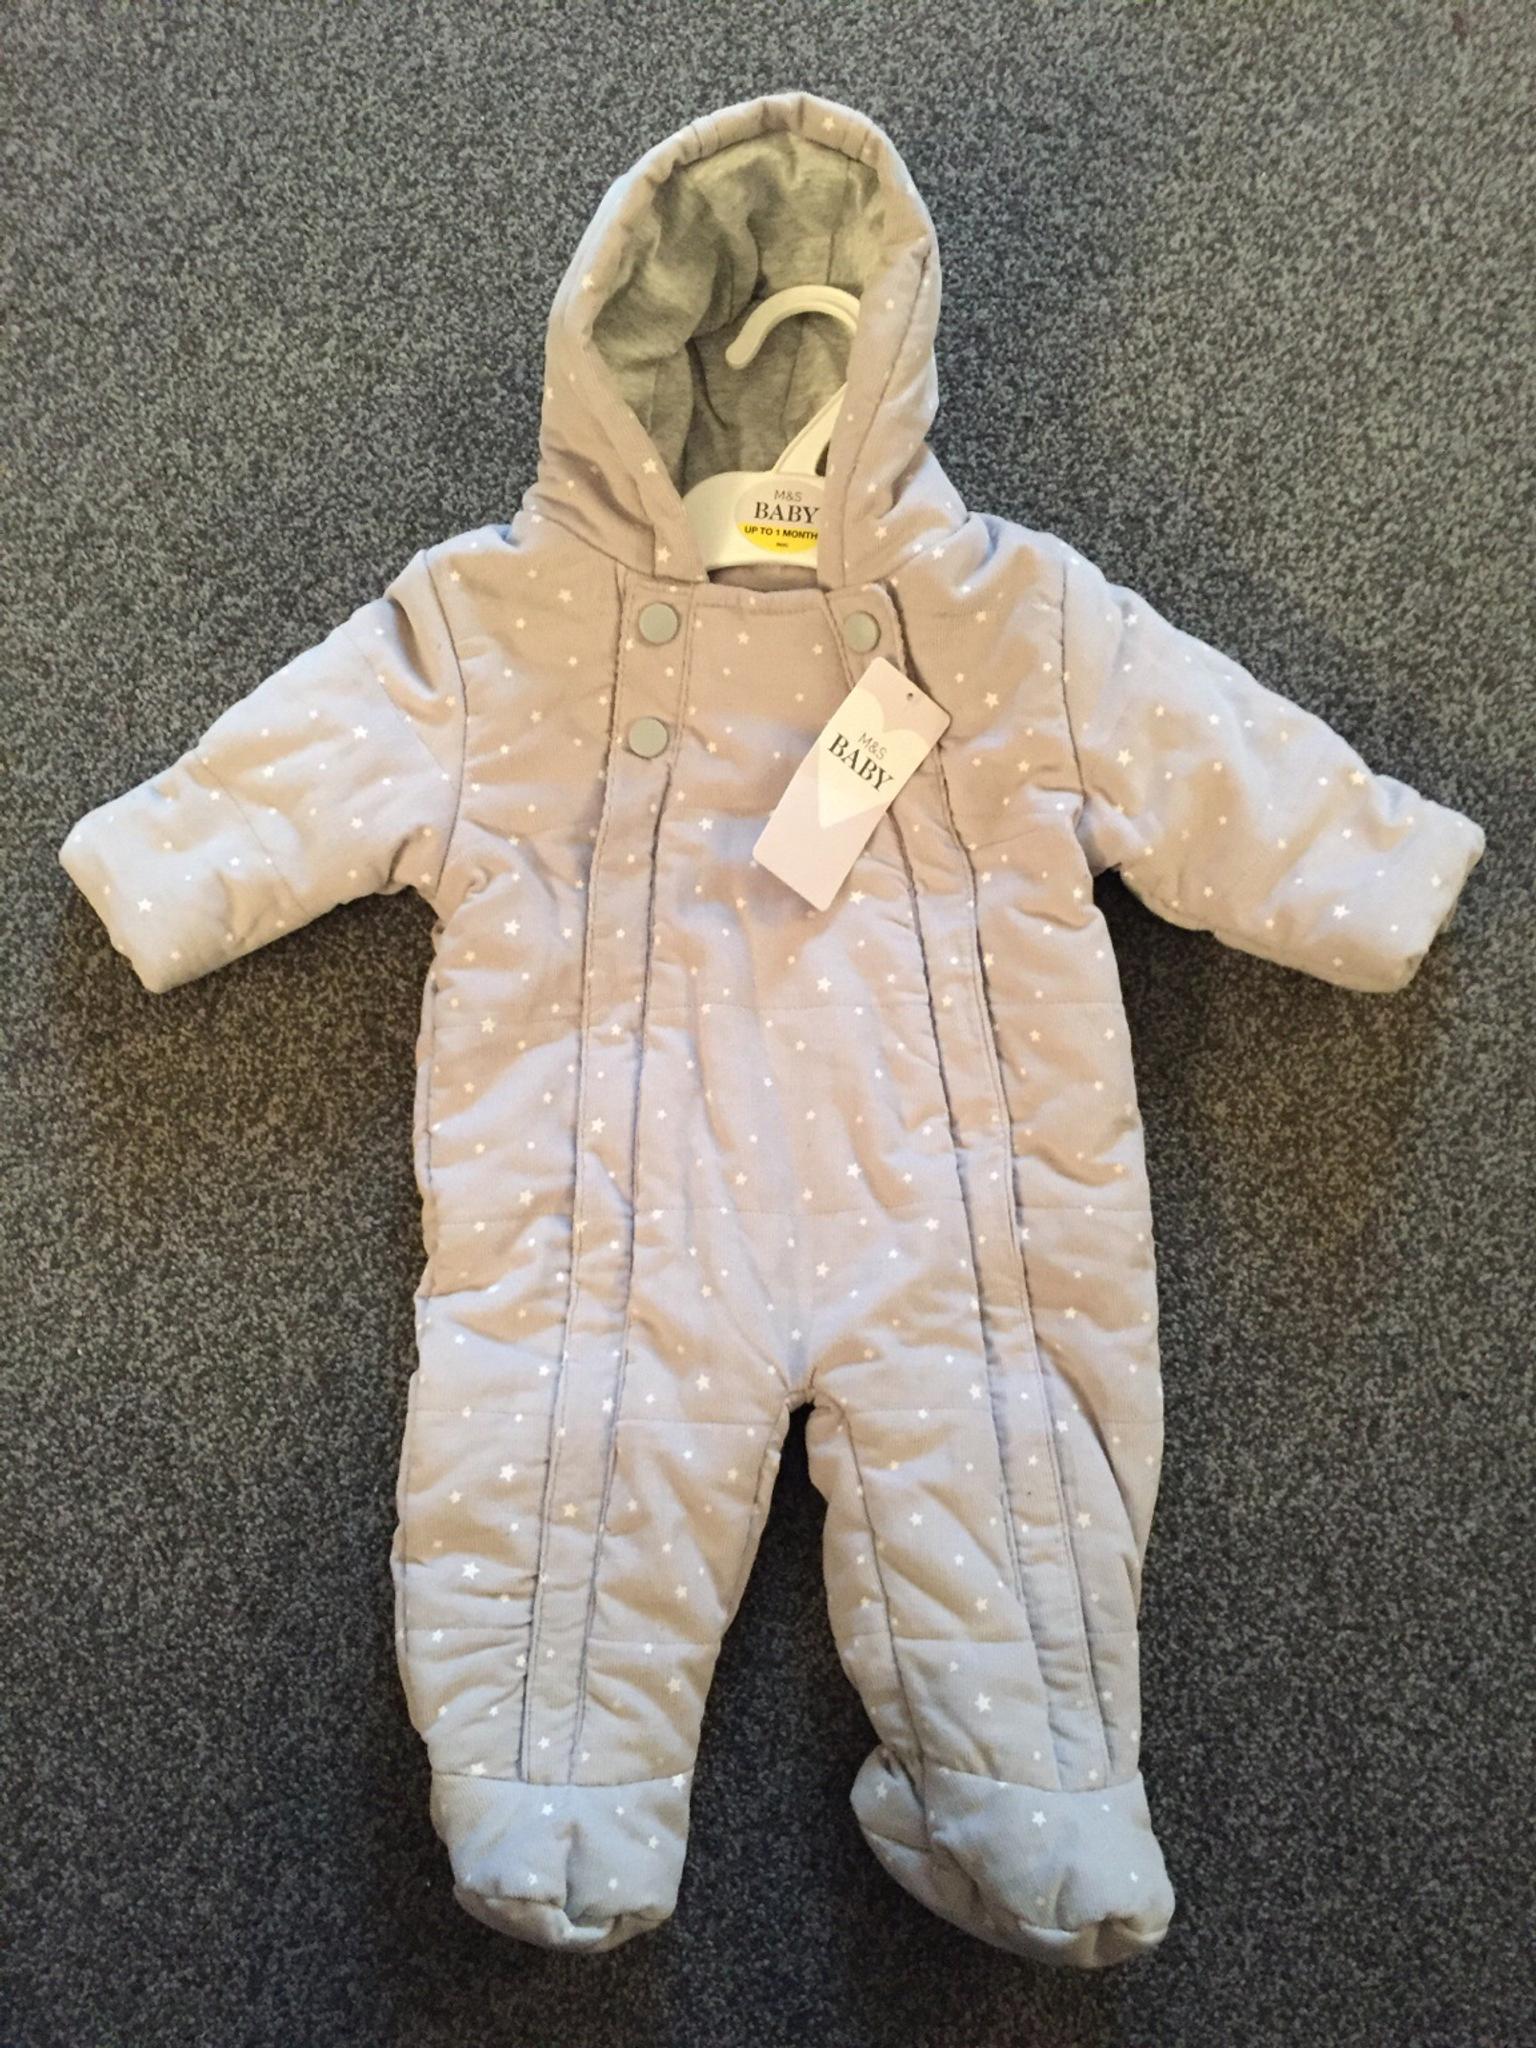 m&s baby pram suit